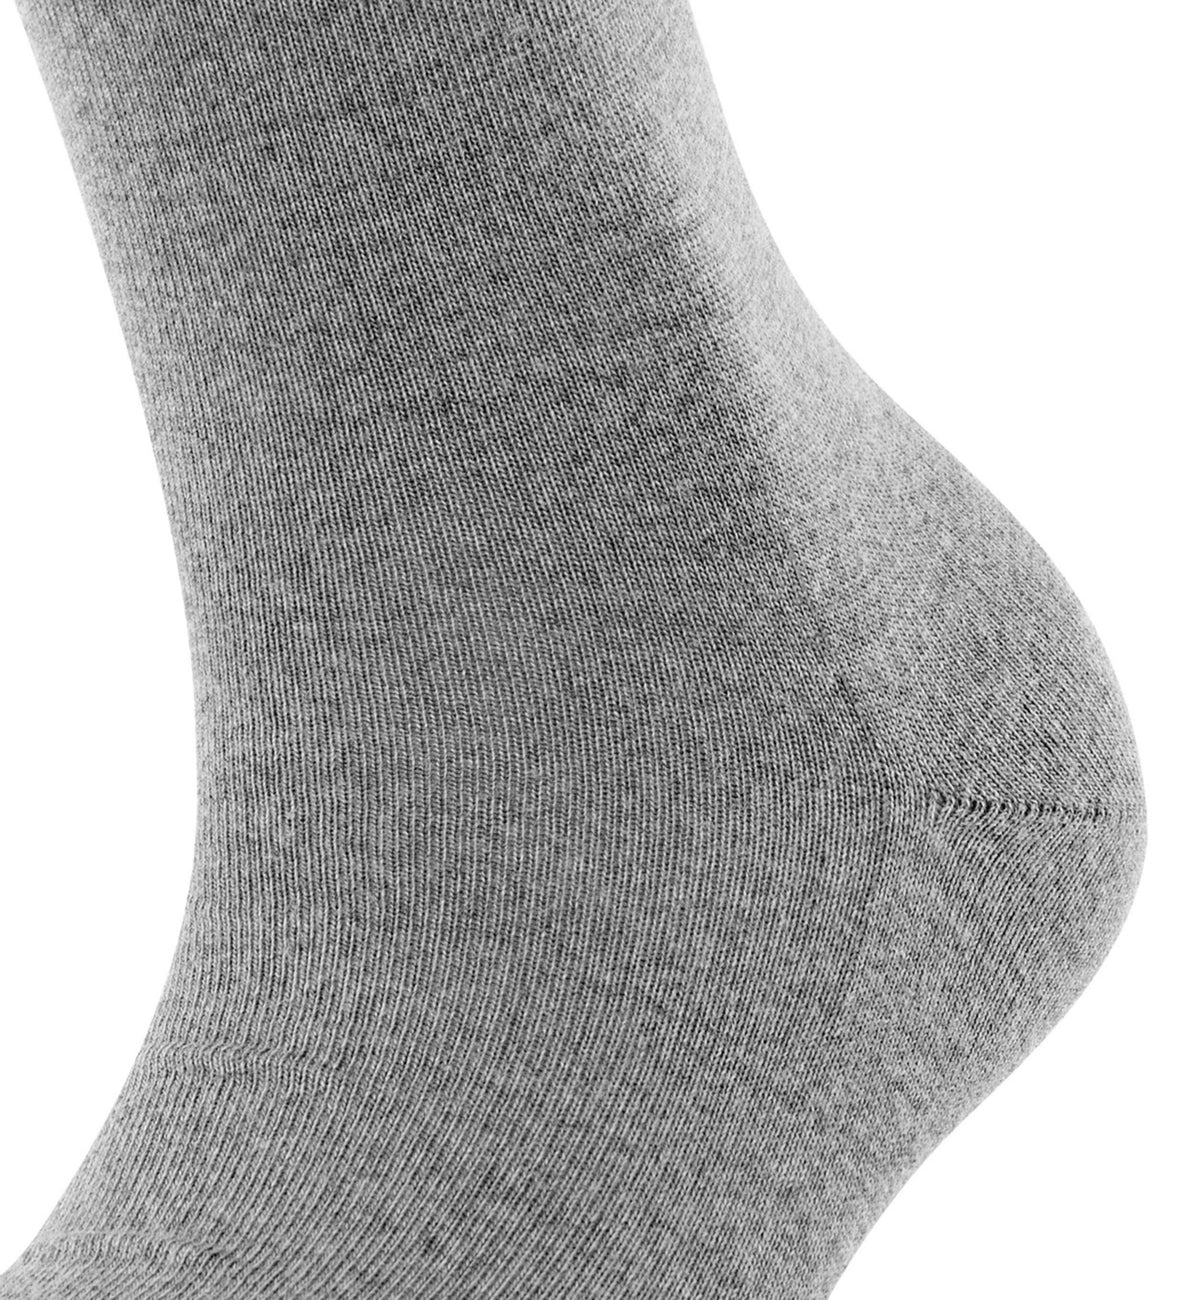 FALKE Softmerino Crew Socks (47488),6.5/7.5,Light Grey Melange - Light Grey Melange,6.5/7.5